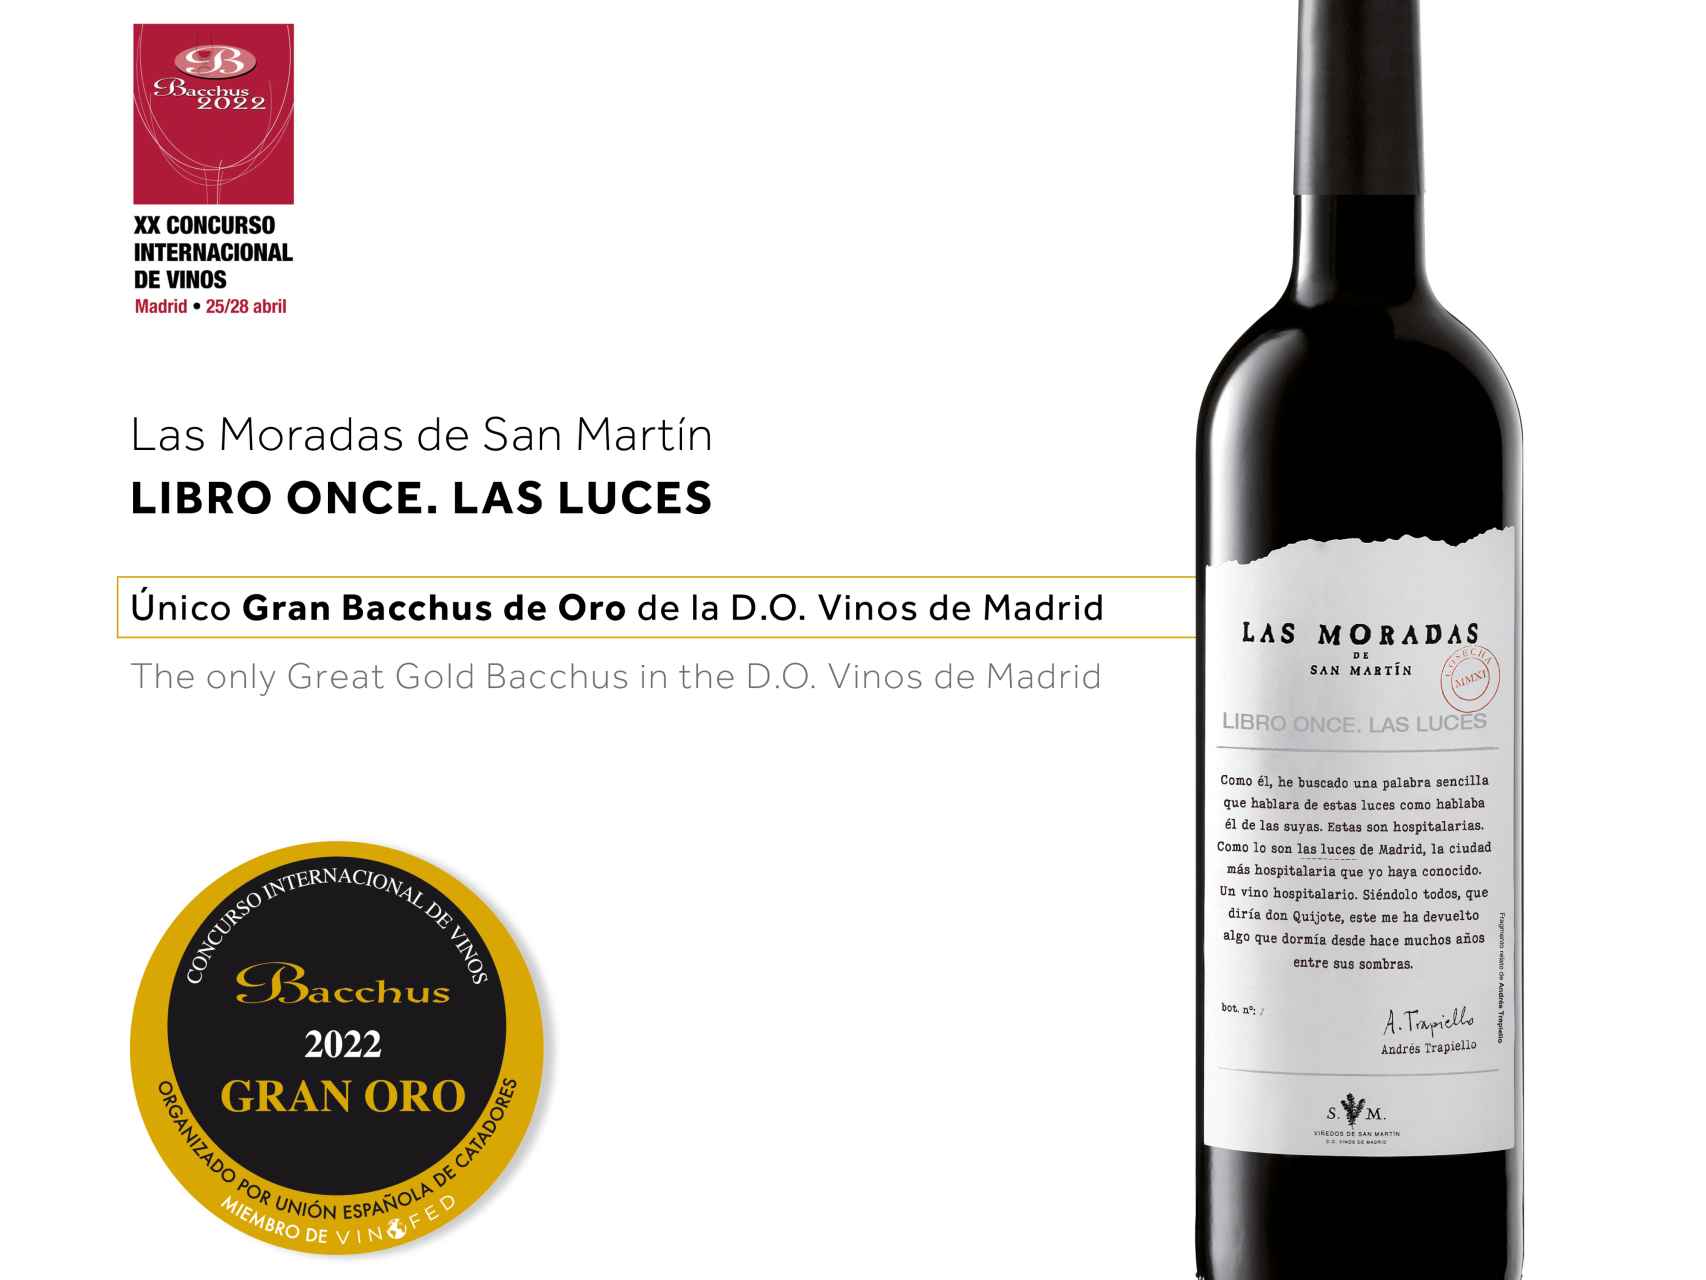 El vino tinto Libro Once.Las Luces, con D.O.P. Vinos de Madrid y ganador del Gran Bacchus de Oro.